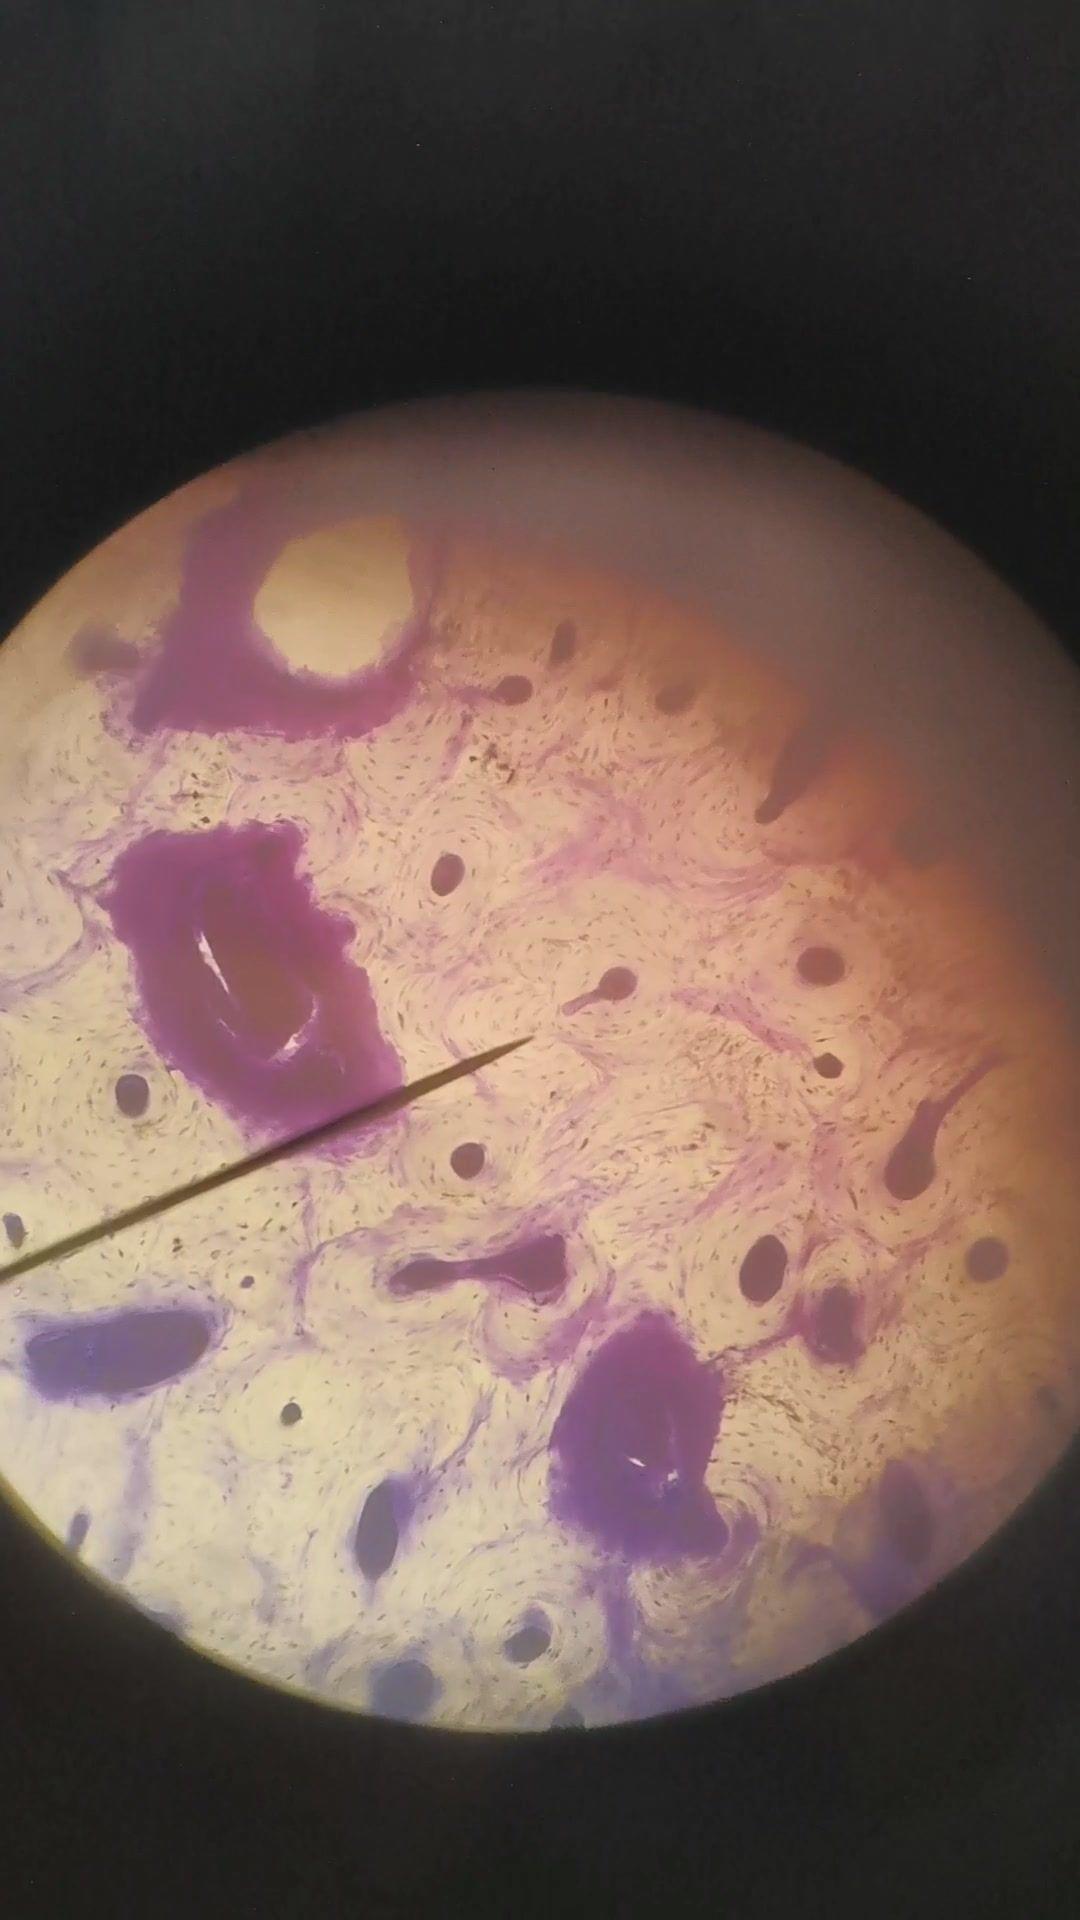 滴虫显微镜下图片图片